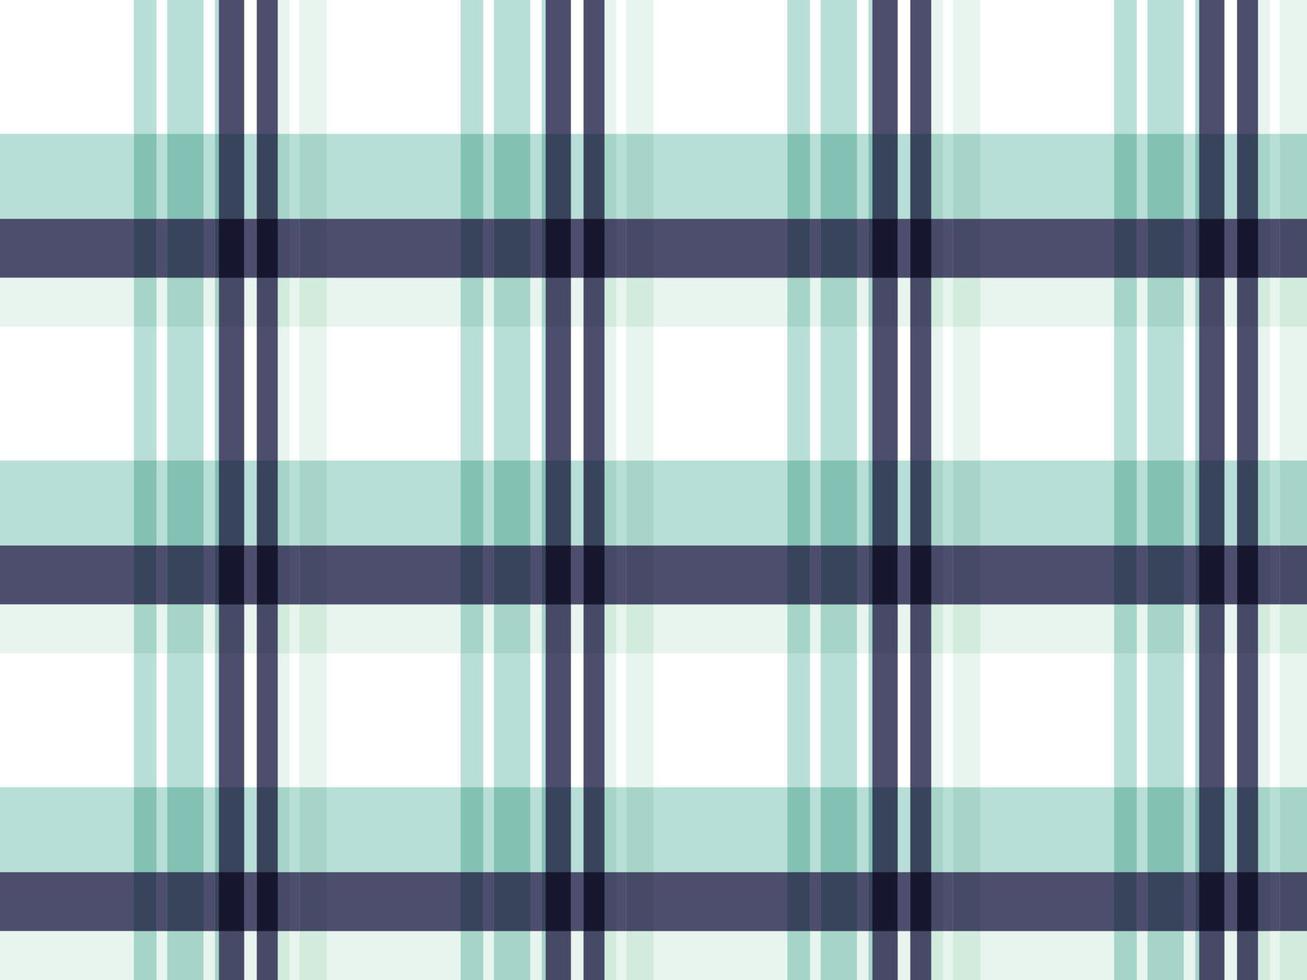 madras xadrez design de tecido azul e branco cor pastel um padrão com listras de cores vivas de espessura variável que se cruzam para criar xadrezes desiguais. normalmente usado em camisas. vetor